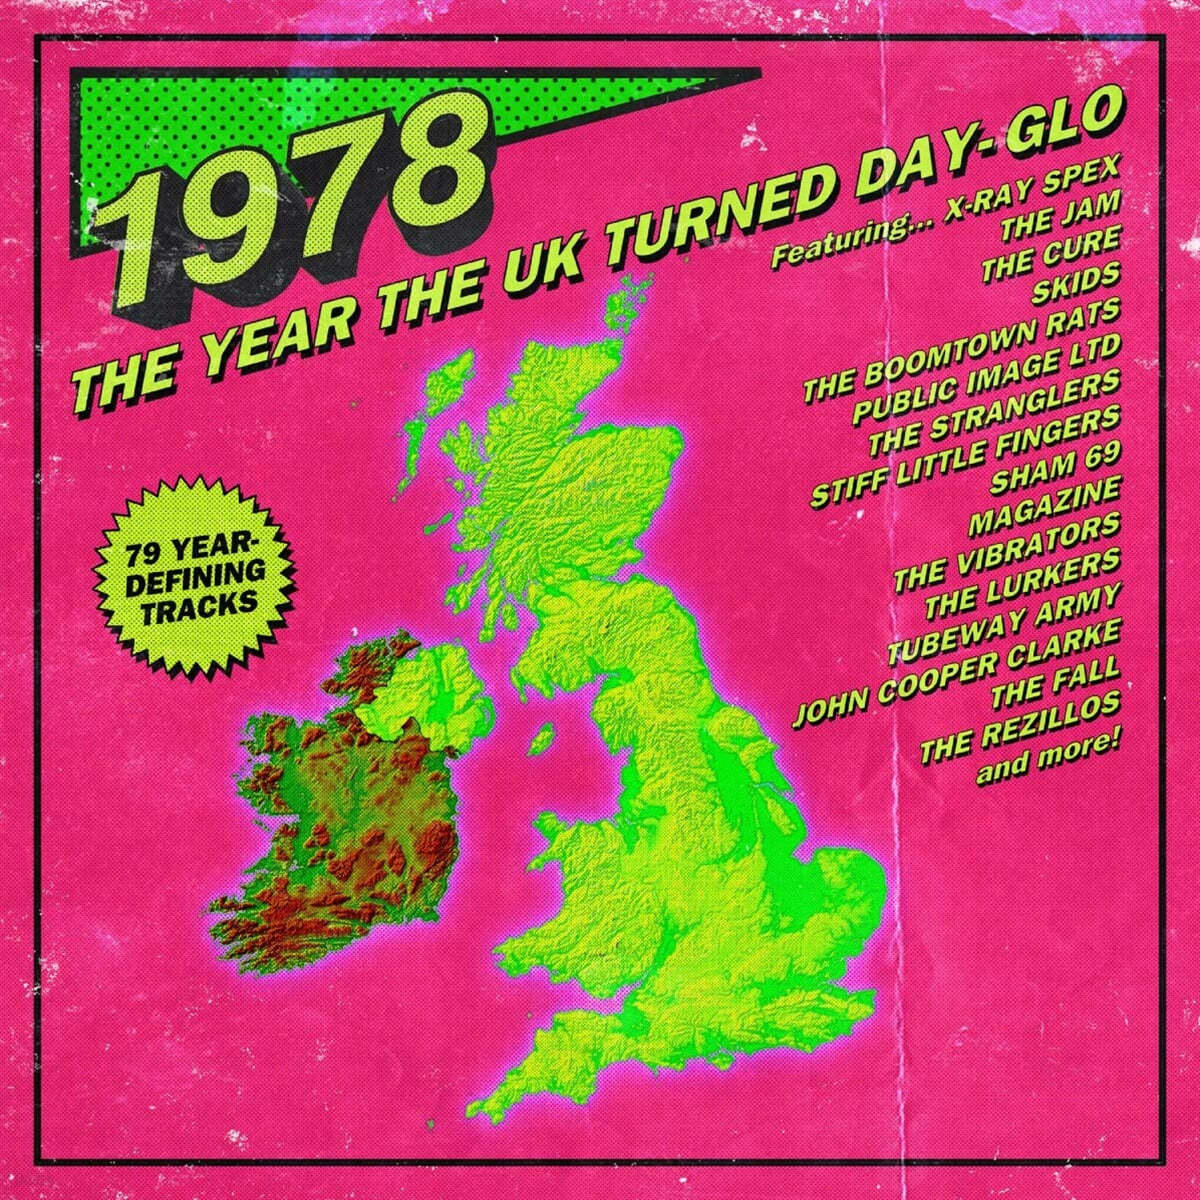 뉴 웨이브 음악 모음집 (1978: The Year The UK Turned Day-Glo) 